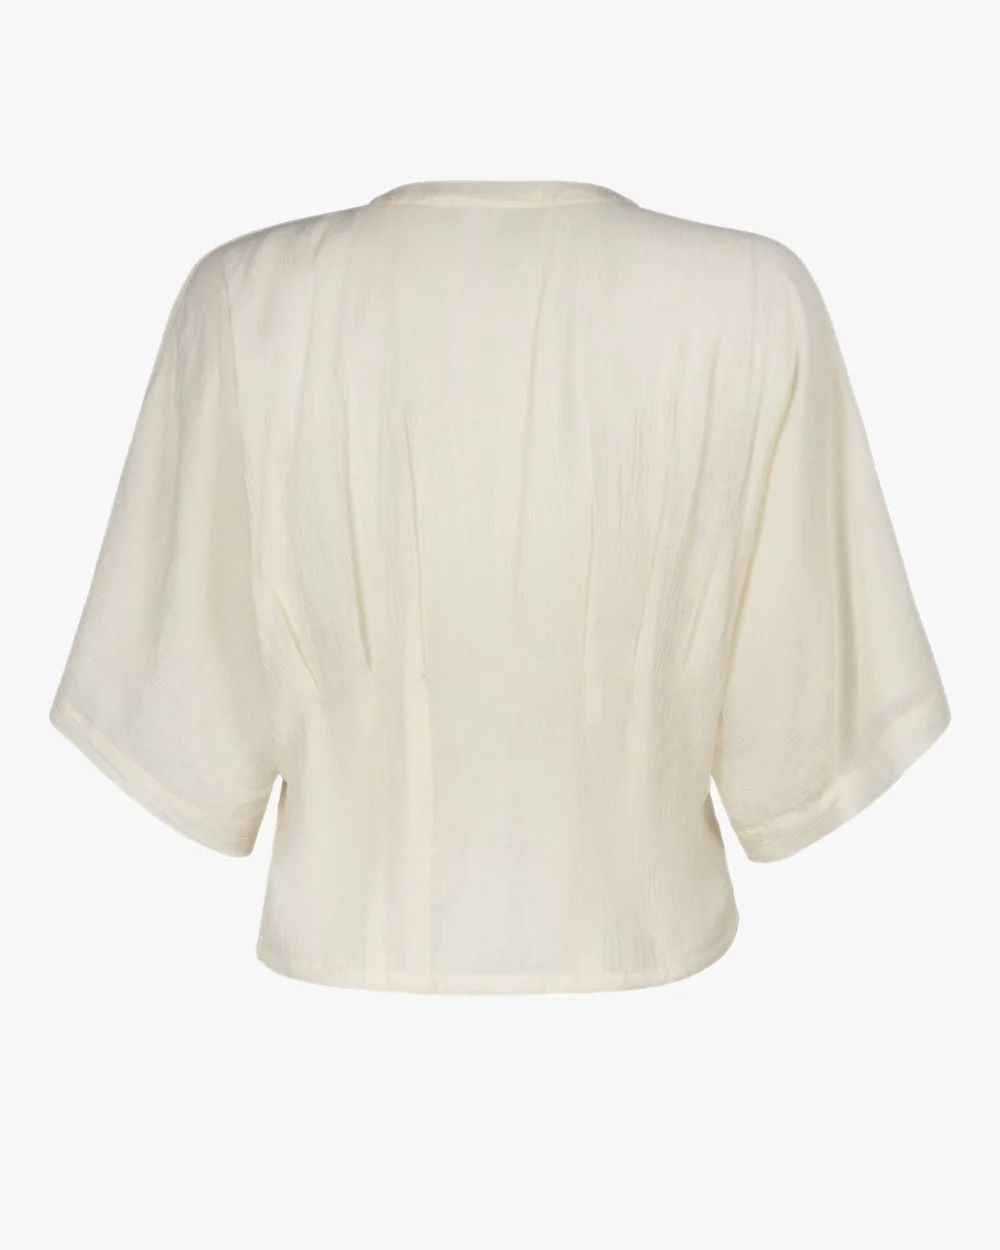 Cilou Parchment Shirt